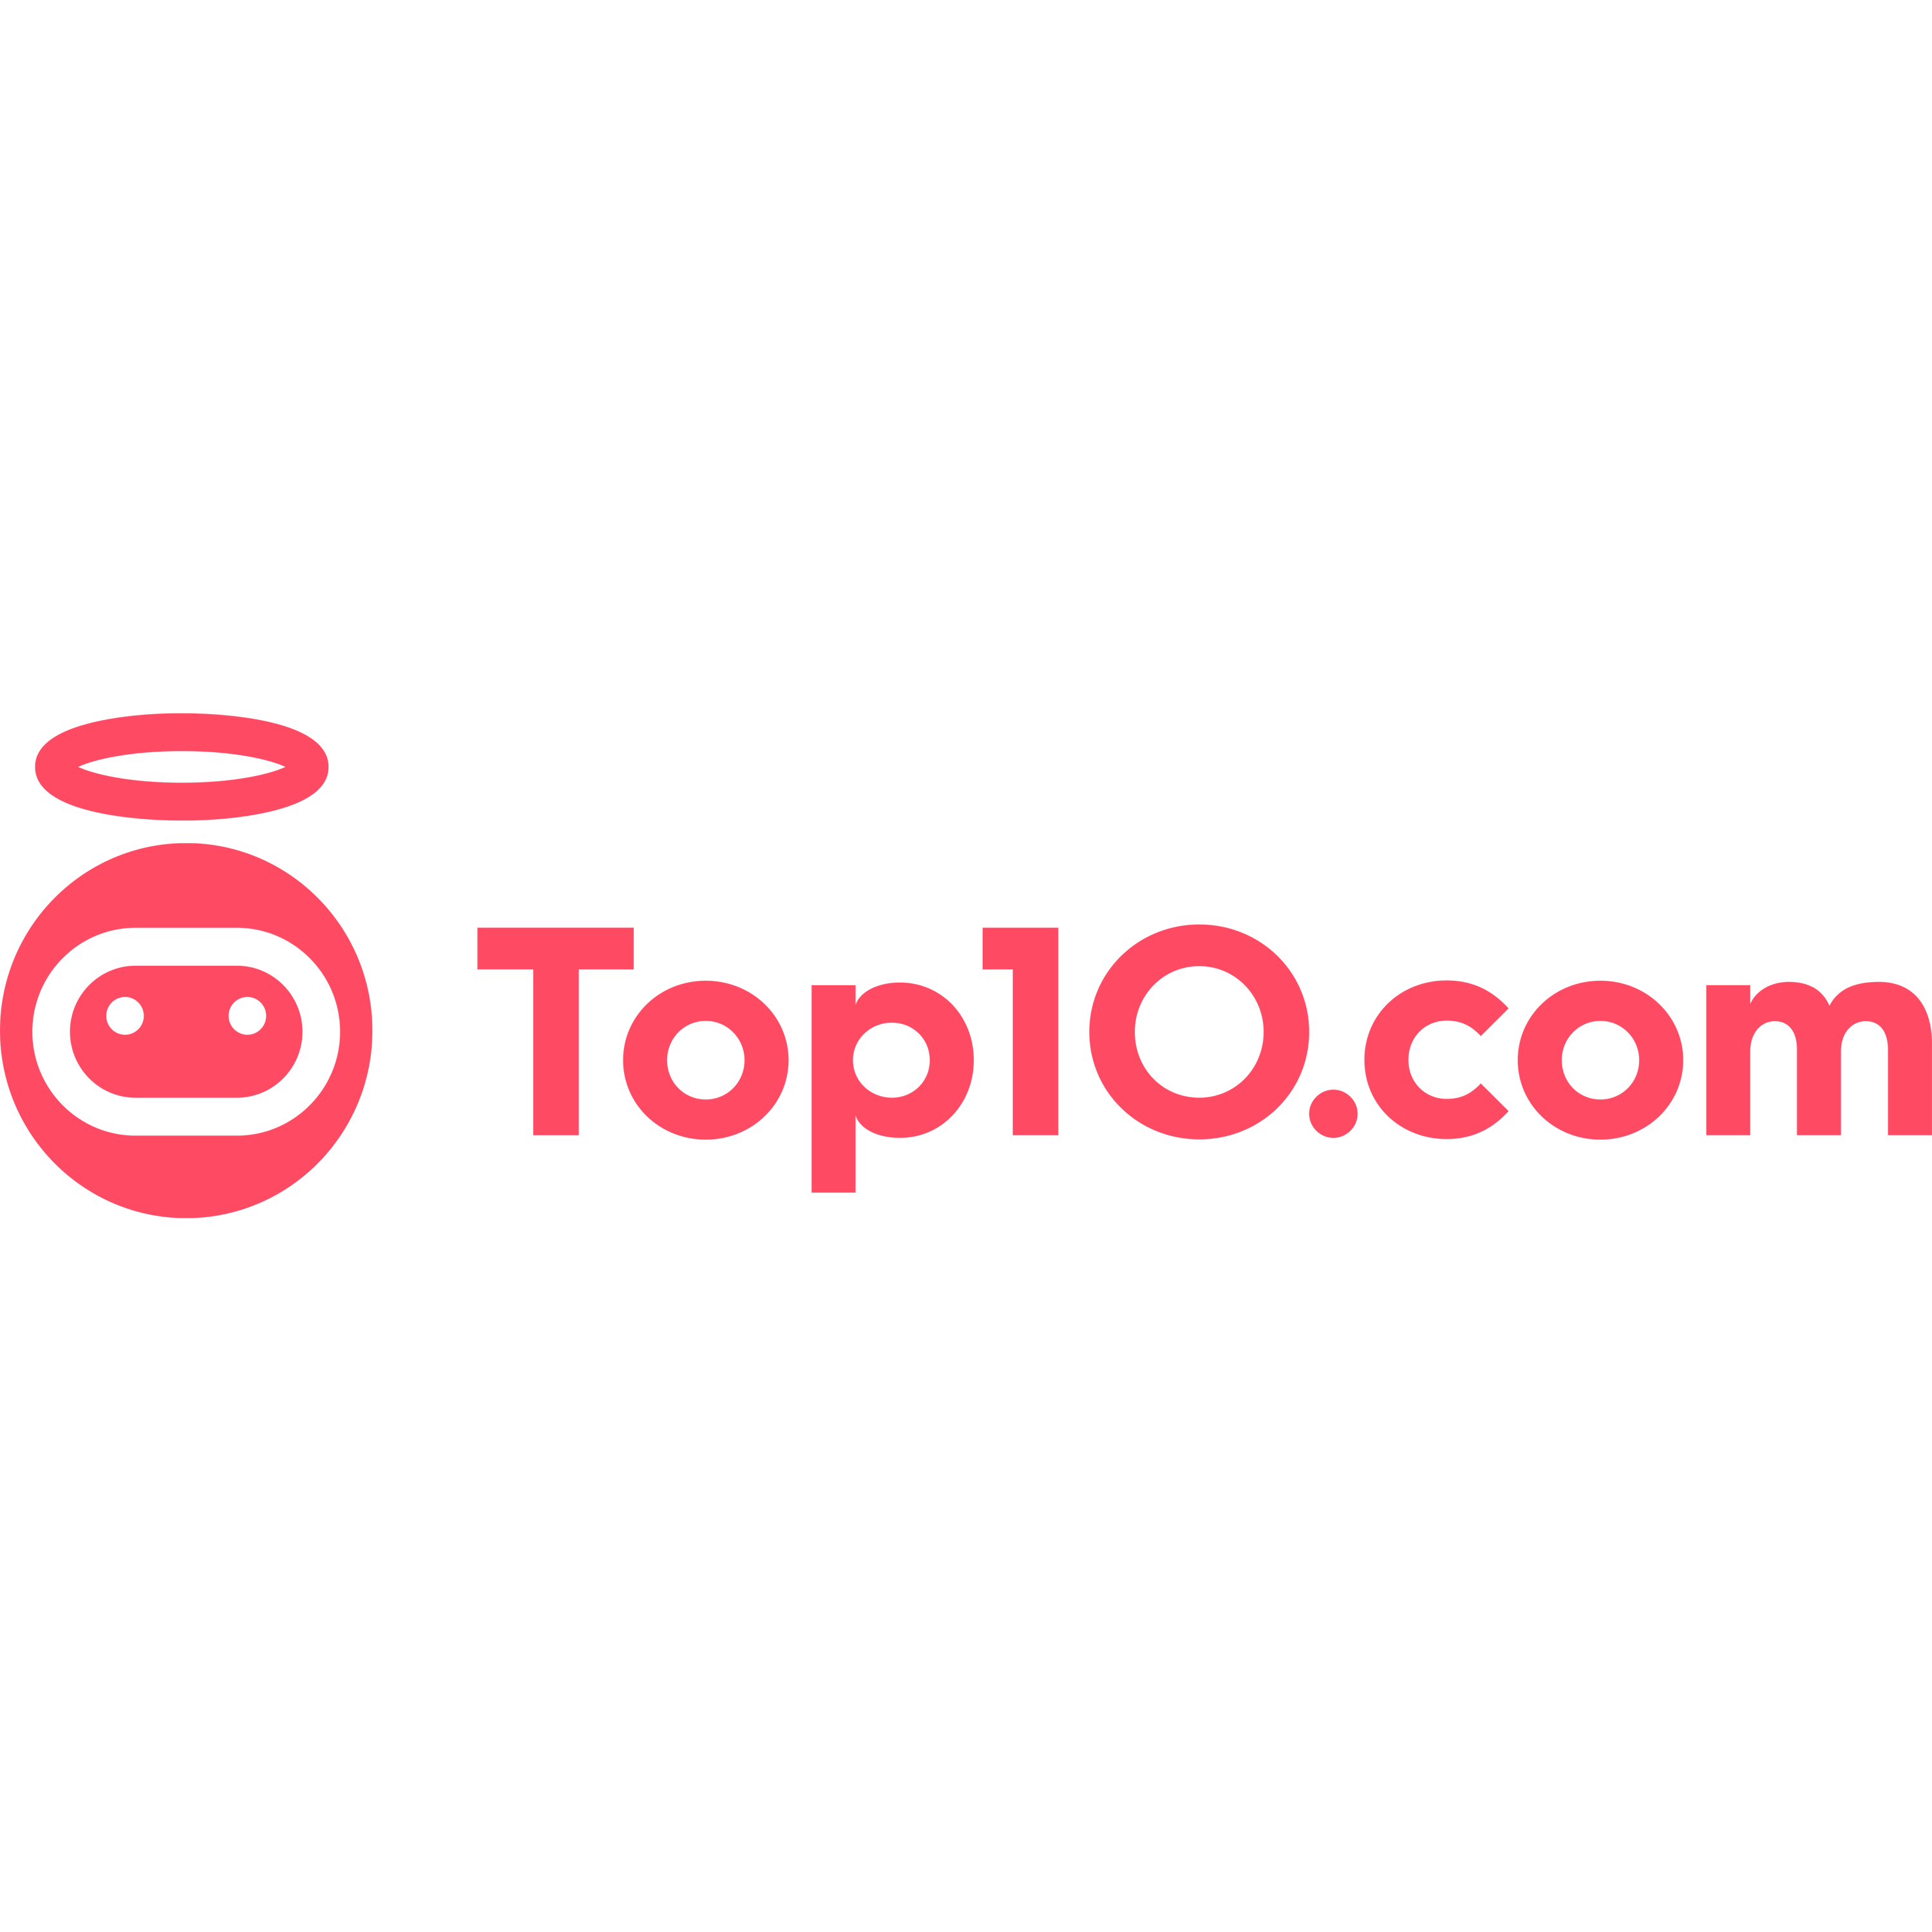 Top10.com Logo Transparent Image